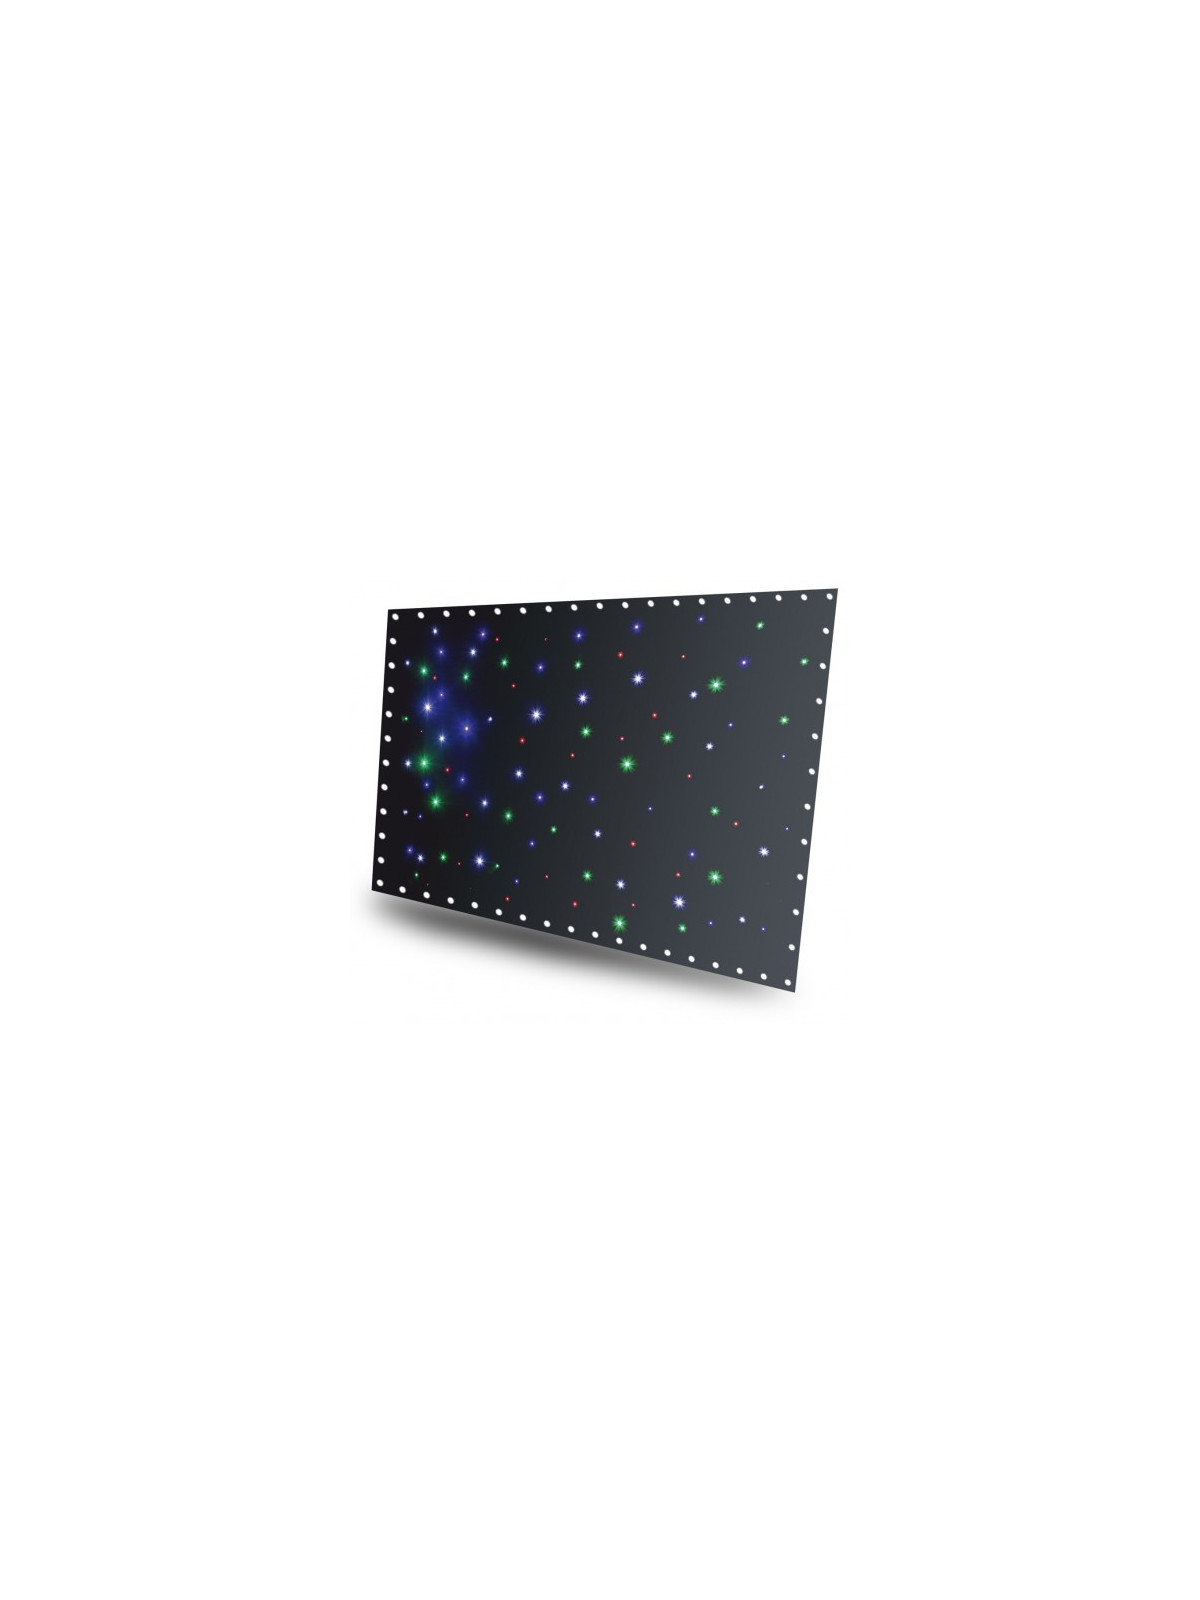 BeamZ Sparklewall 3x2m RGB